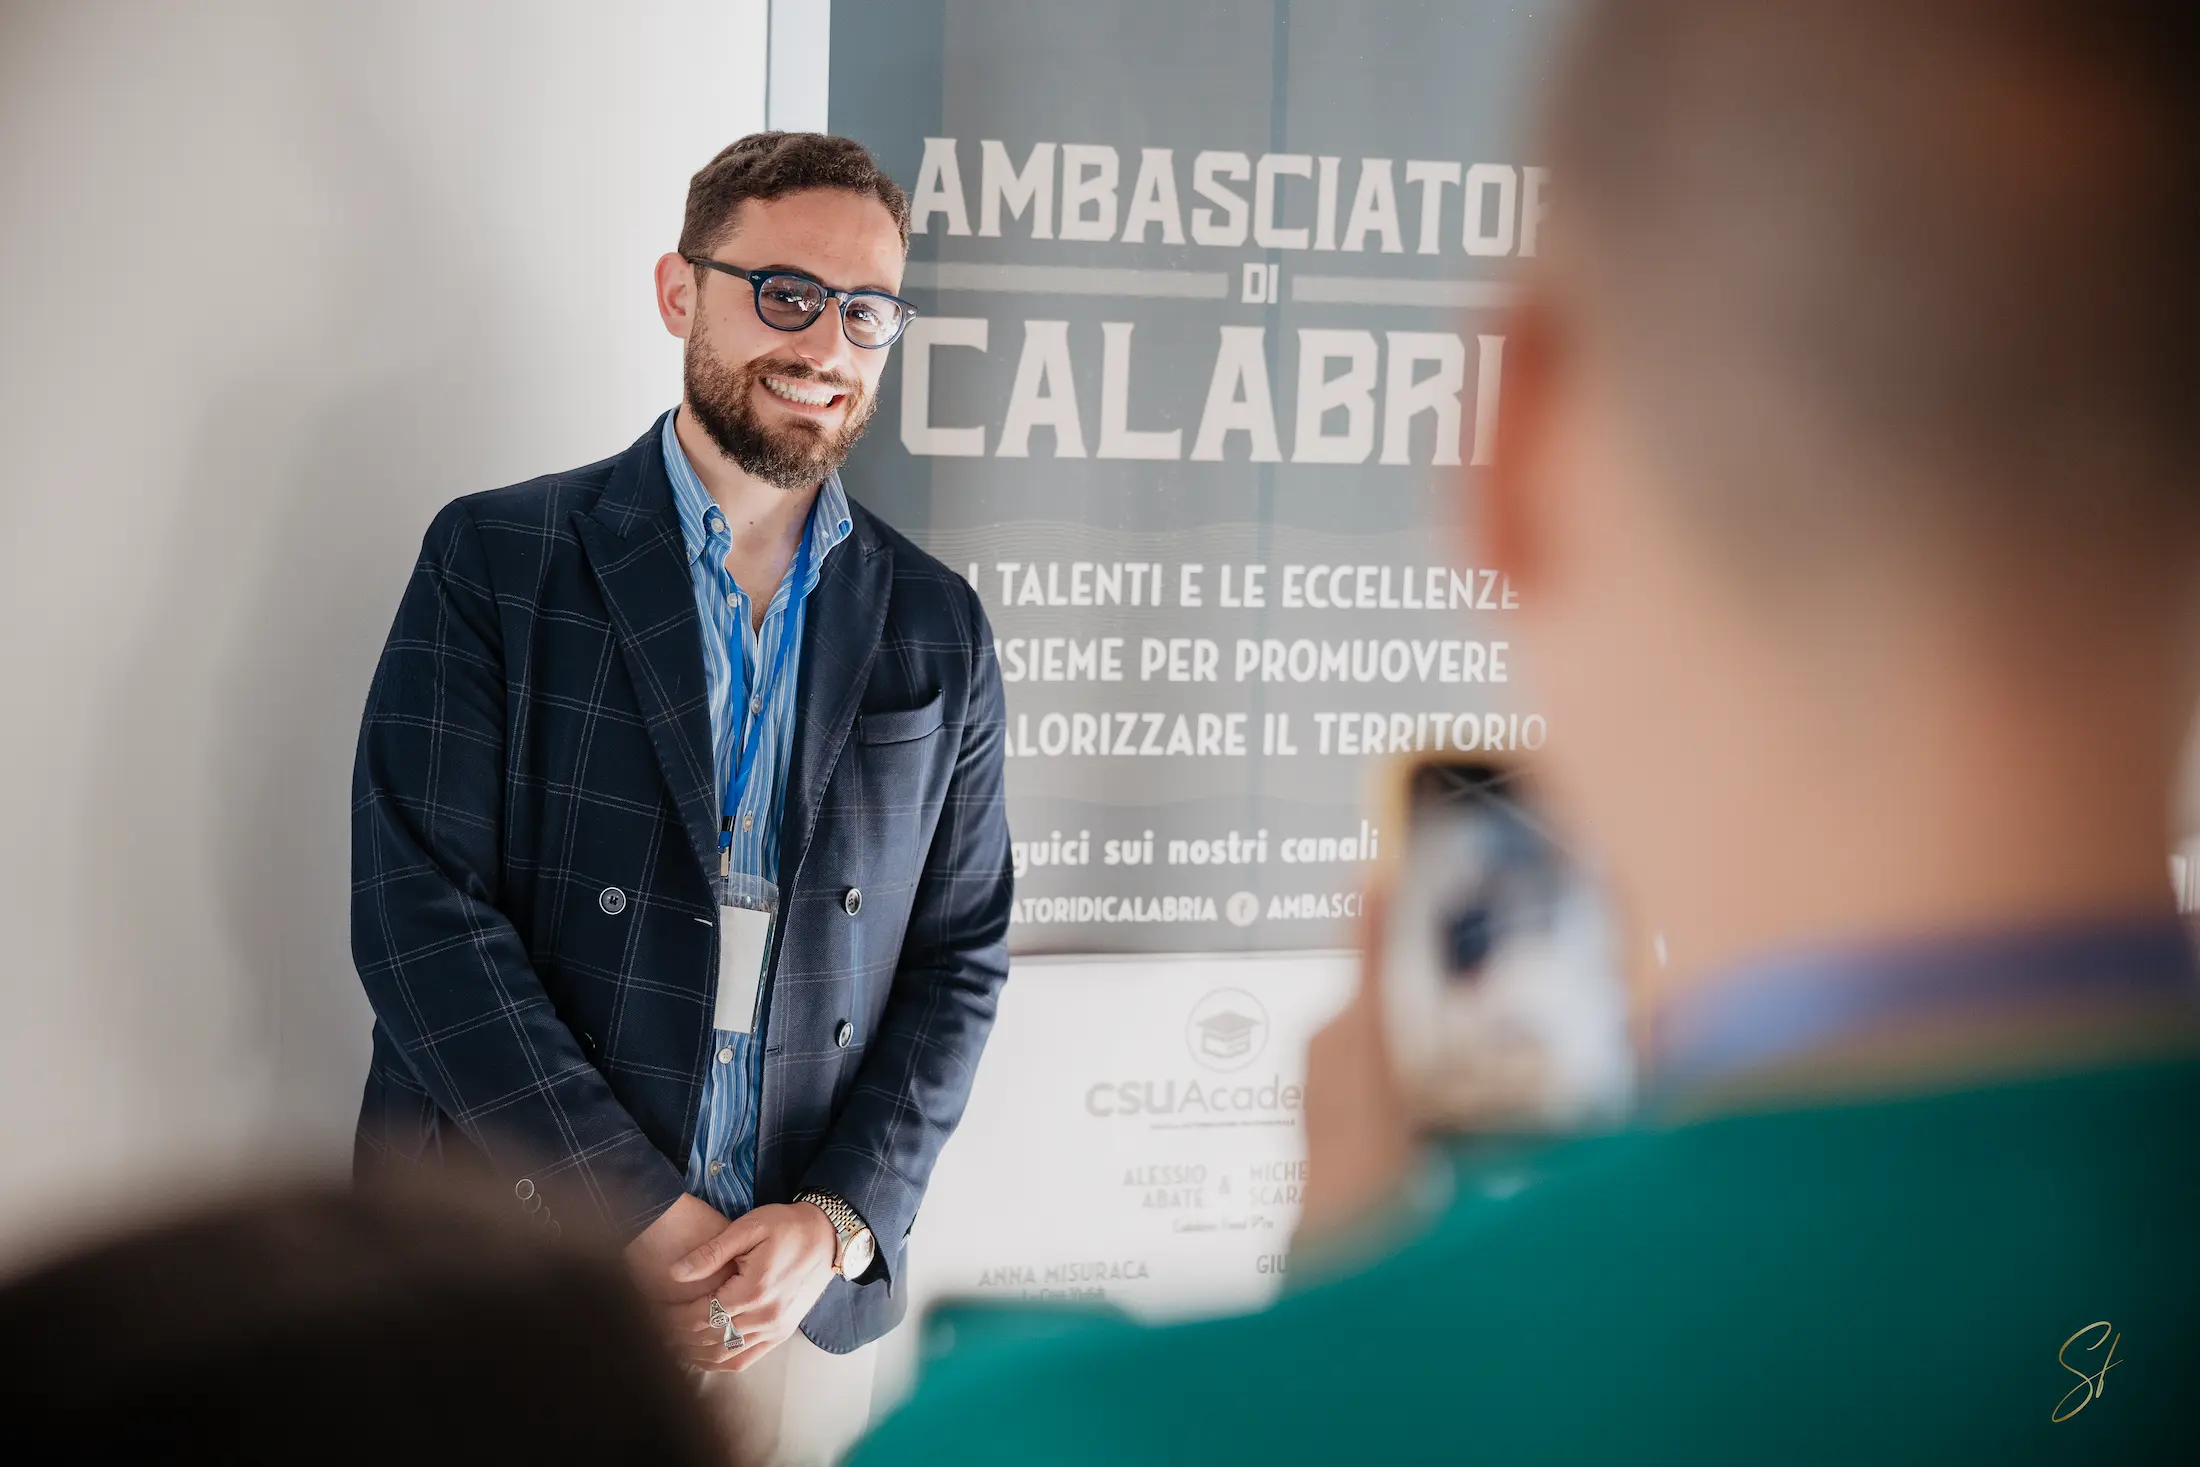 Sviluppo e formazione: CSU Academy diventa Ambasciatore di Calabria